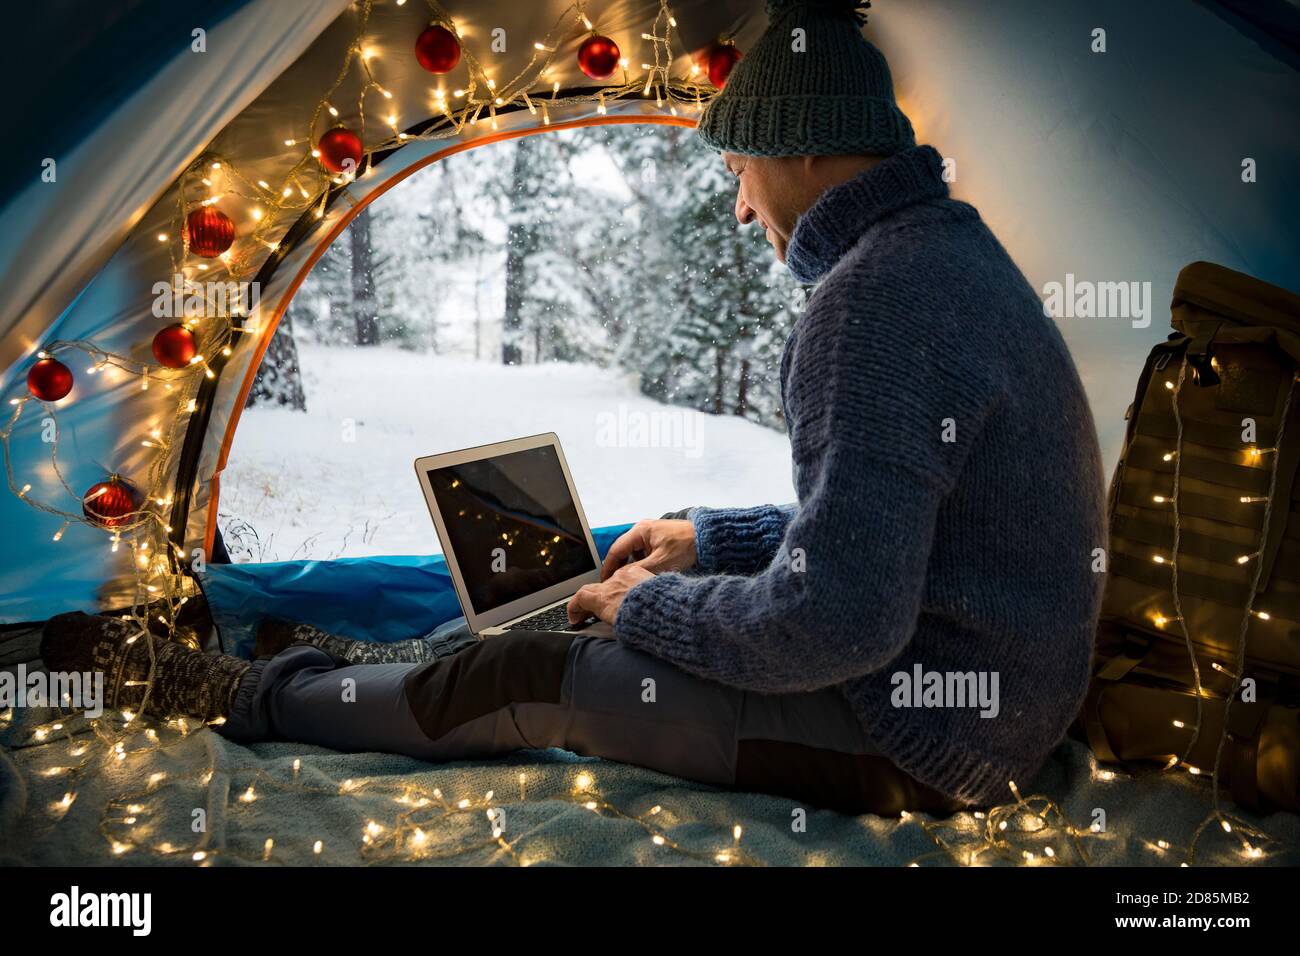 Mann sitzt im Zelt mit Weihnachtsbeleuchtung geschmückt, mit Laptop. Schöne Draufsicht auf skandinavische Landschaft, mit Schnee bedeckter Wald. Stockfoto